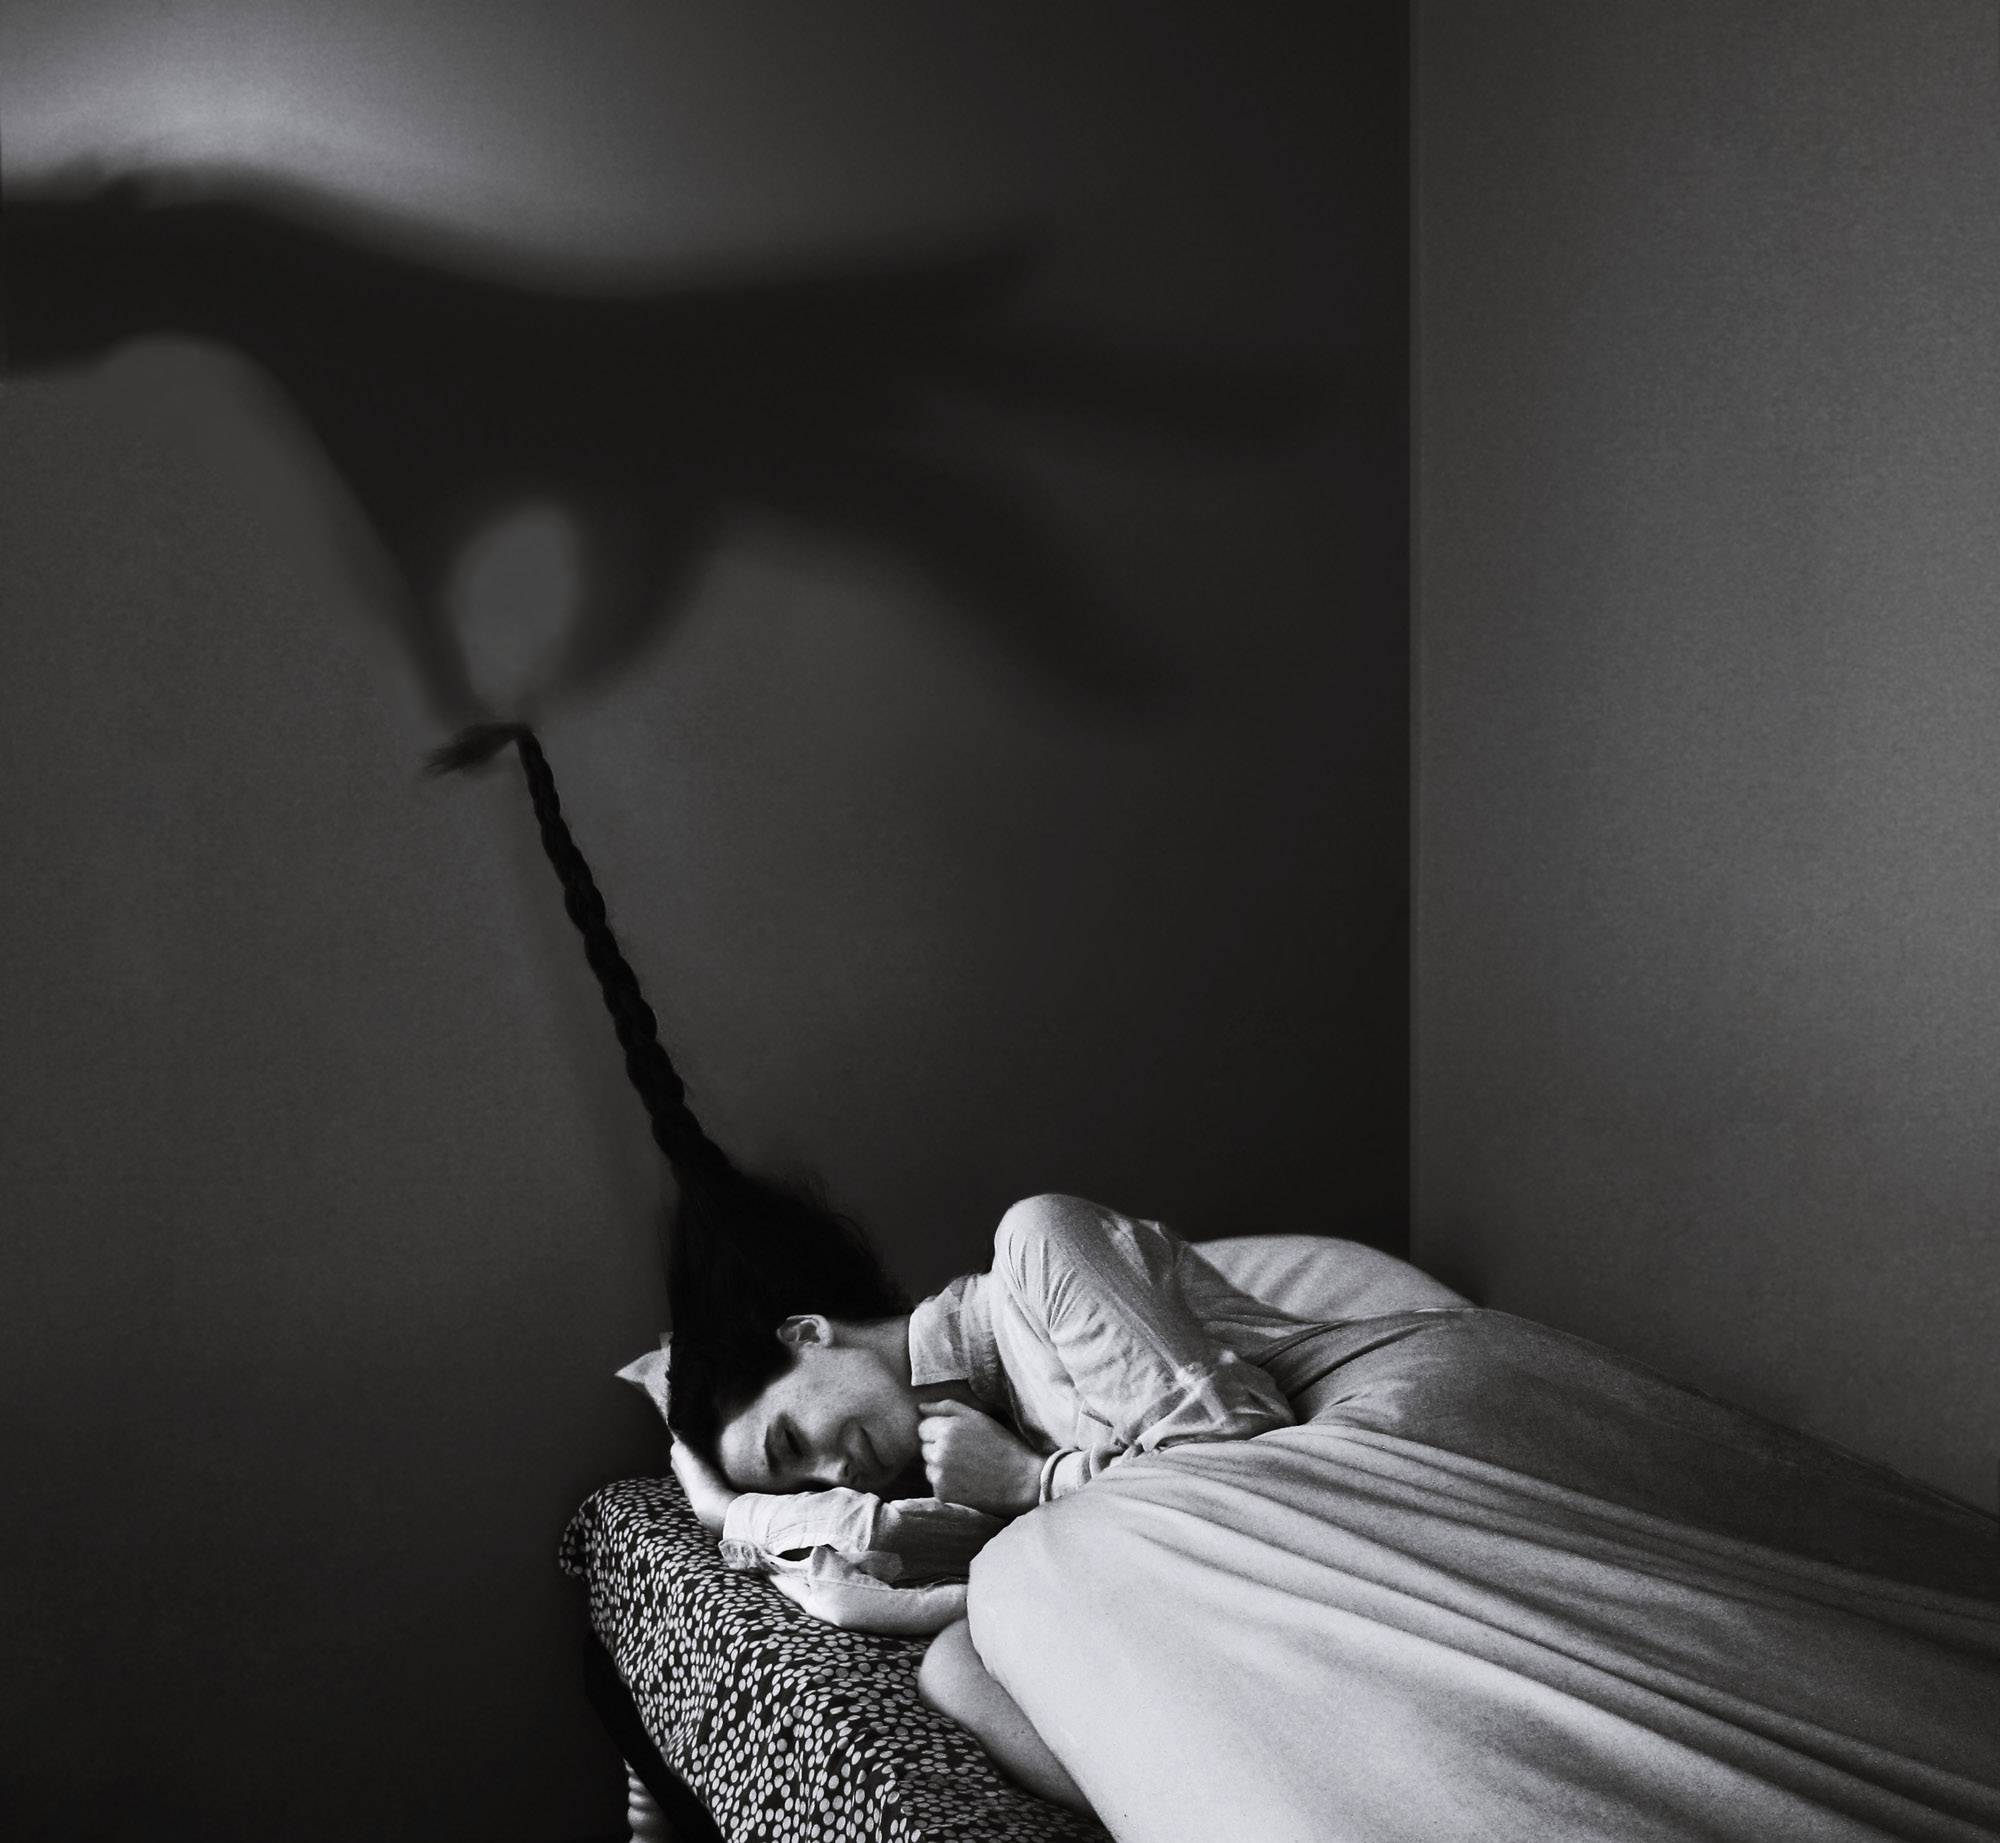 Мужчина в черном во сне. Фотограф Ноэлль Освальд. Фотоработы Ноэль Освальд. Сонный паралич Эстетика. Ноэль с.Освальд (Noell Oszvald).